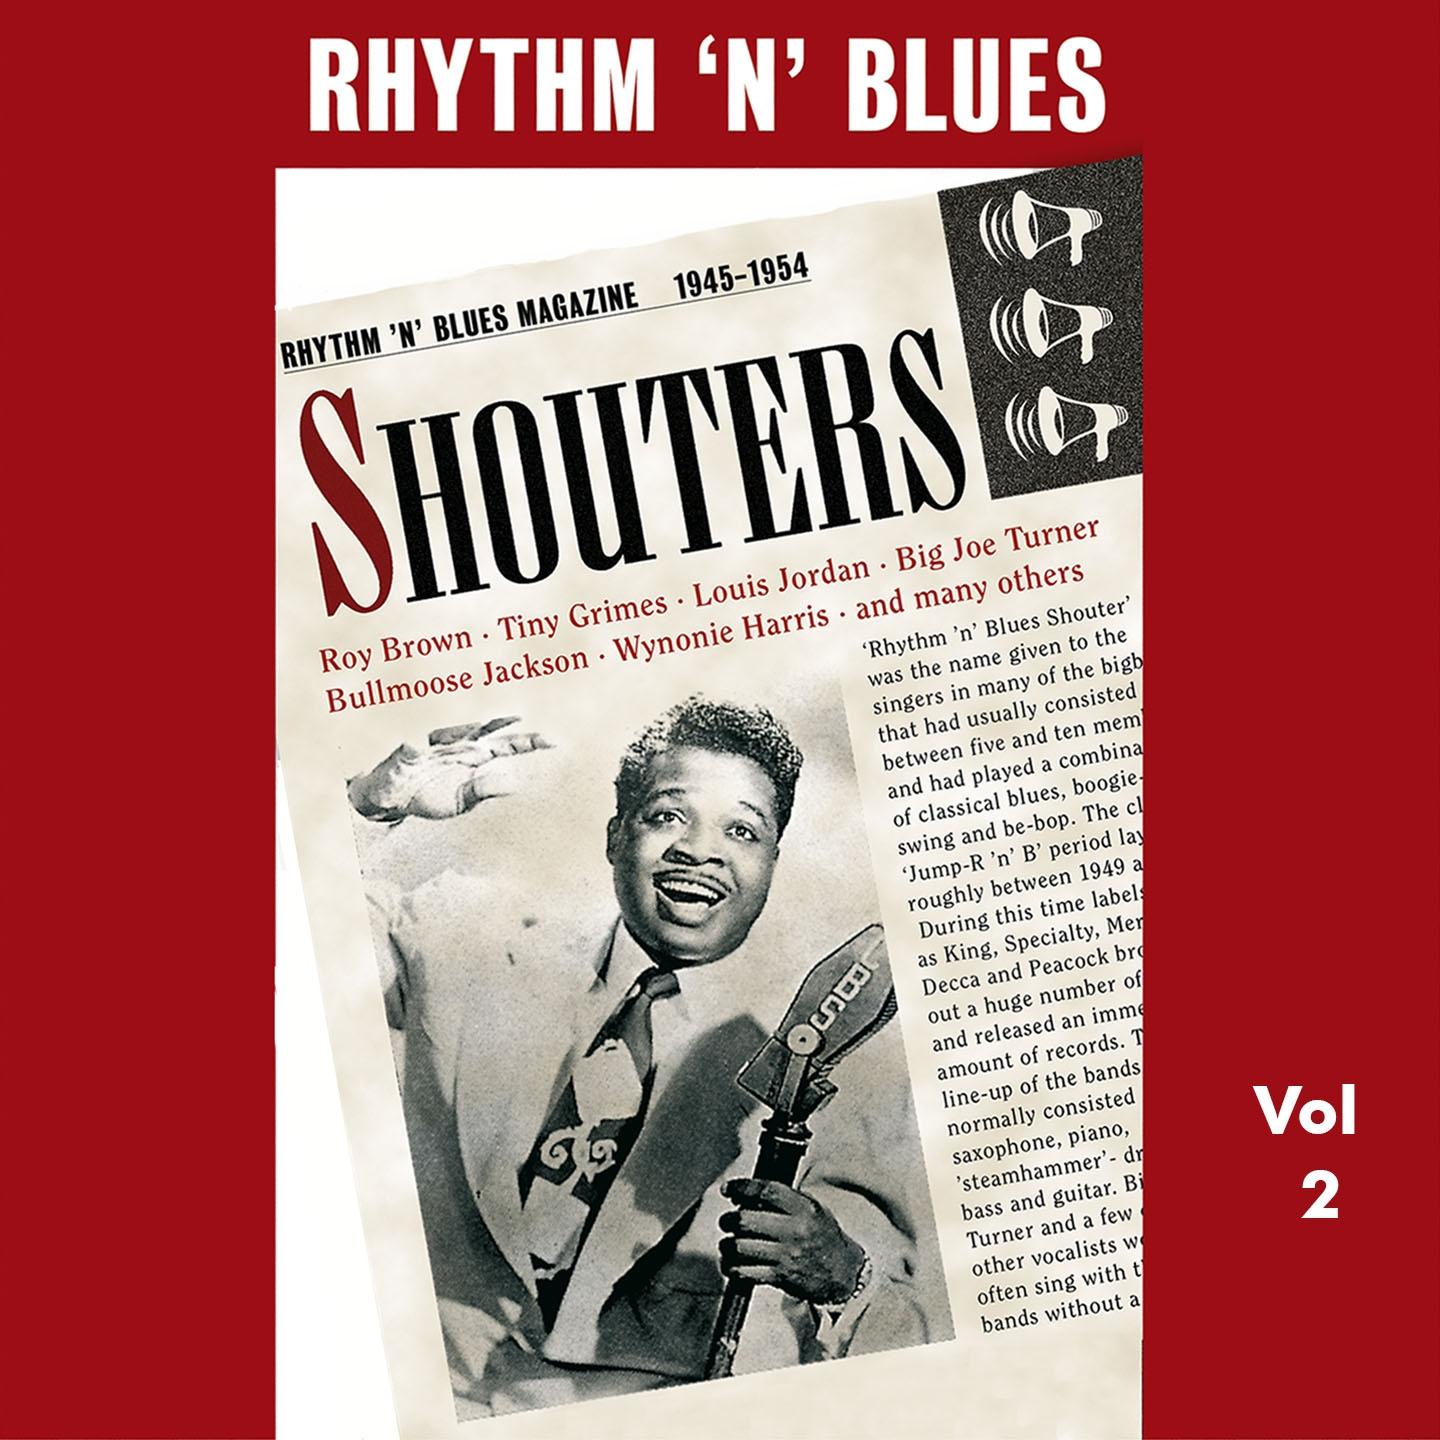 Rhythm 'n' Blues - Shouters, Vol. 2